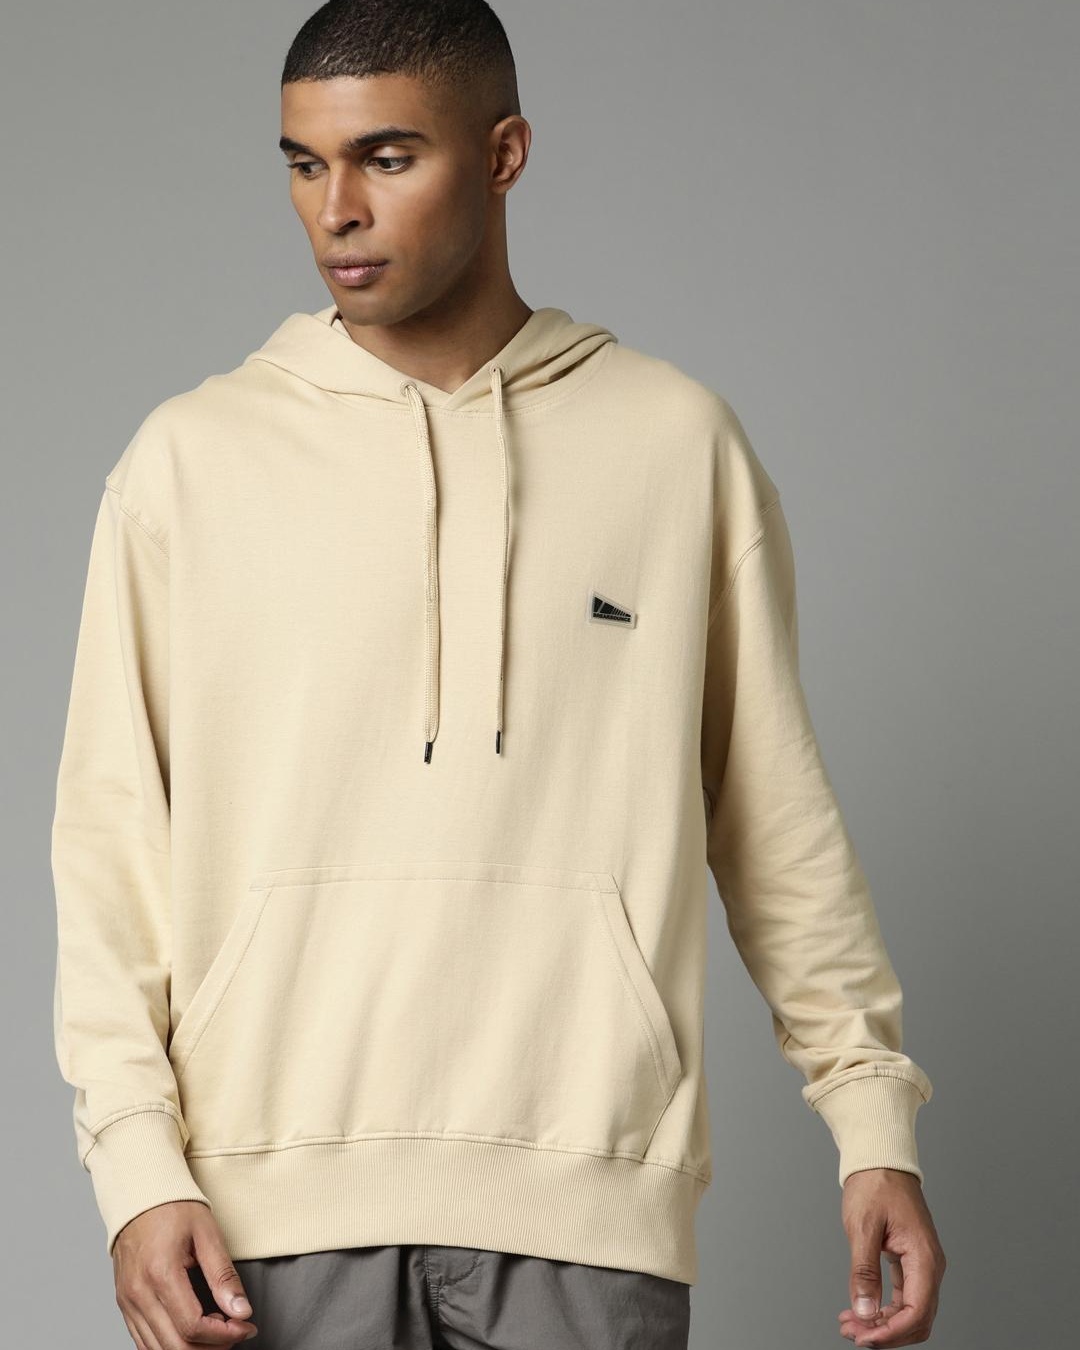 Buy Men's Beige Relaxed Fit Hooded Sweatshirt Online at Bewakoof